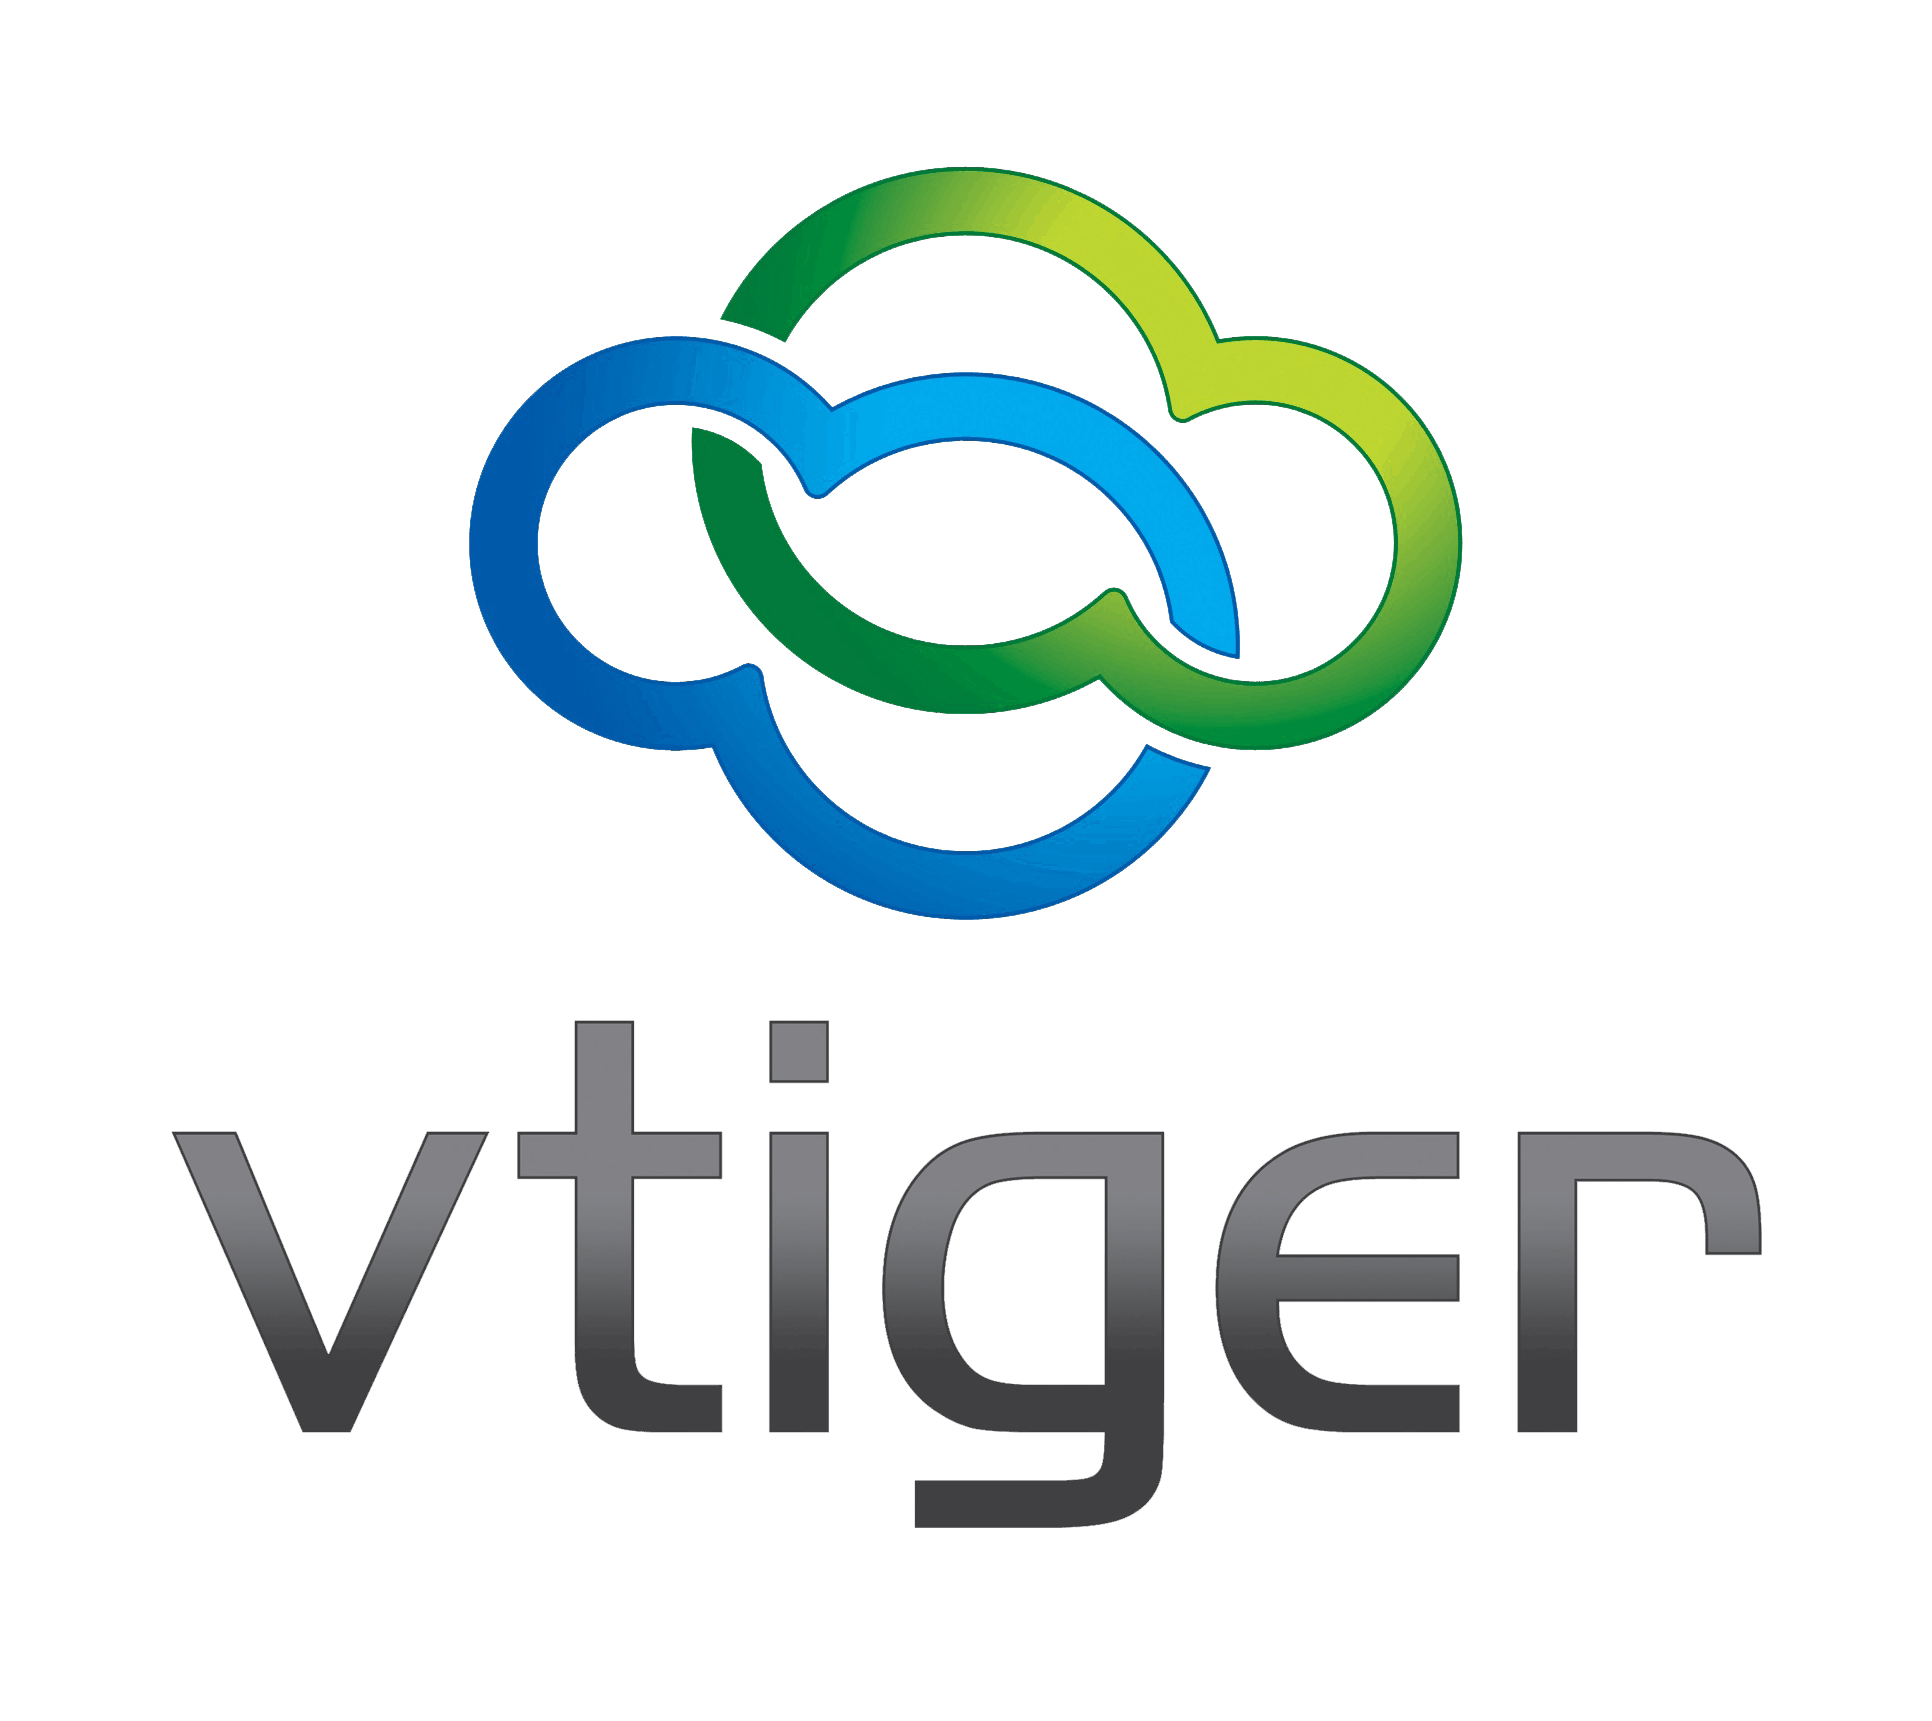 kisspng vtiger crm logo business brand customer relationsh customer relationship management system web devz 5bfb3ea4e163f4.9538955715431922289232